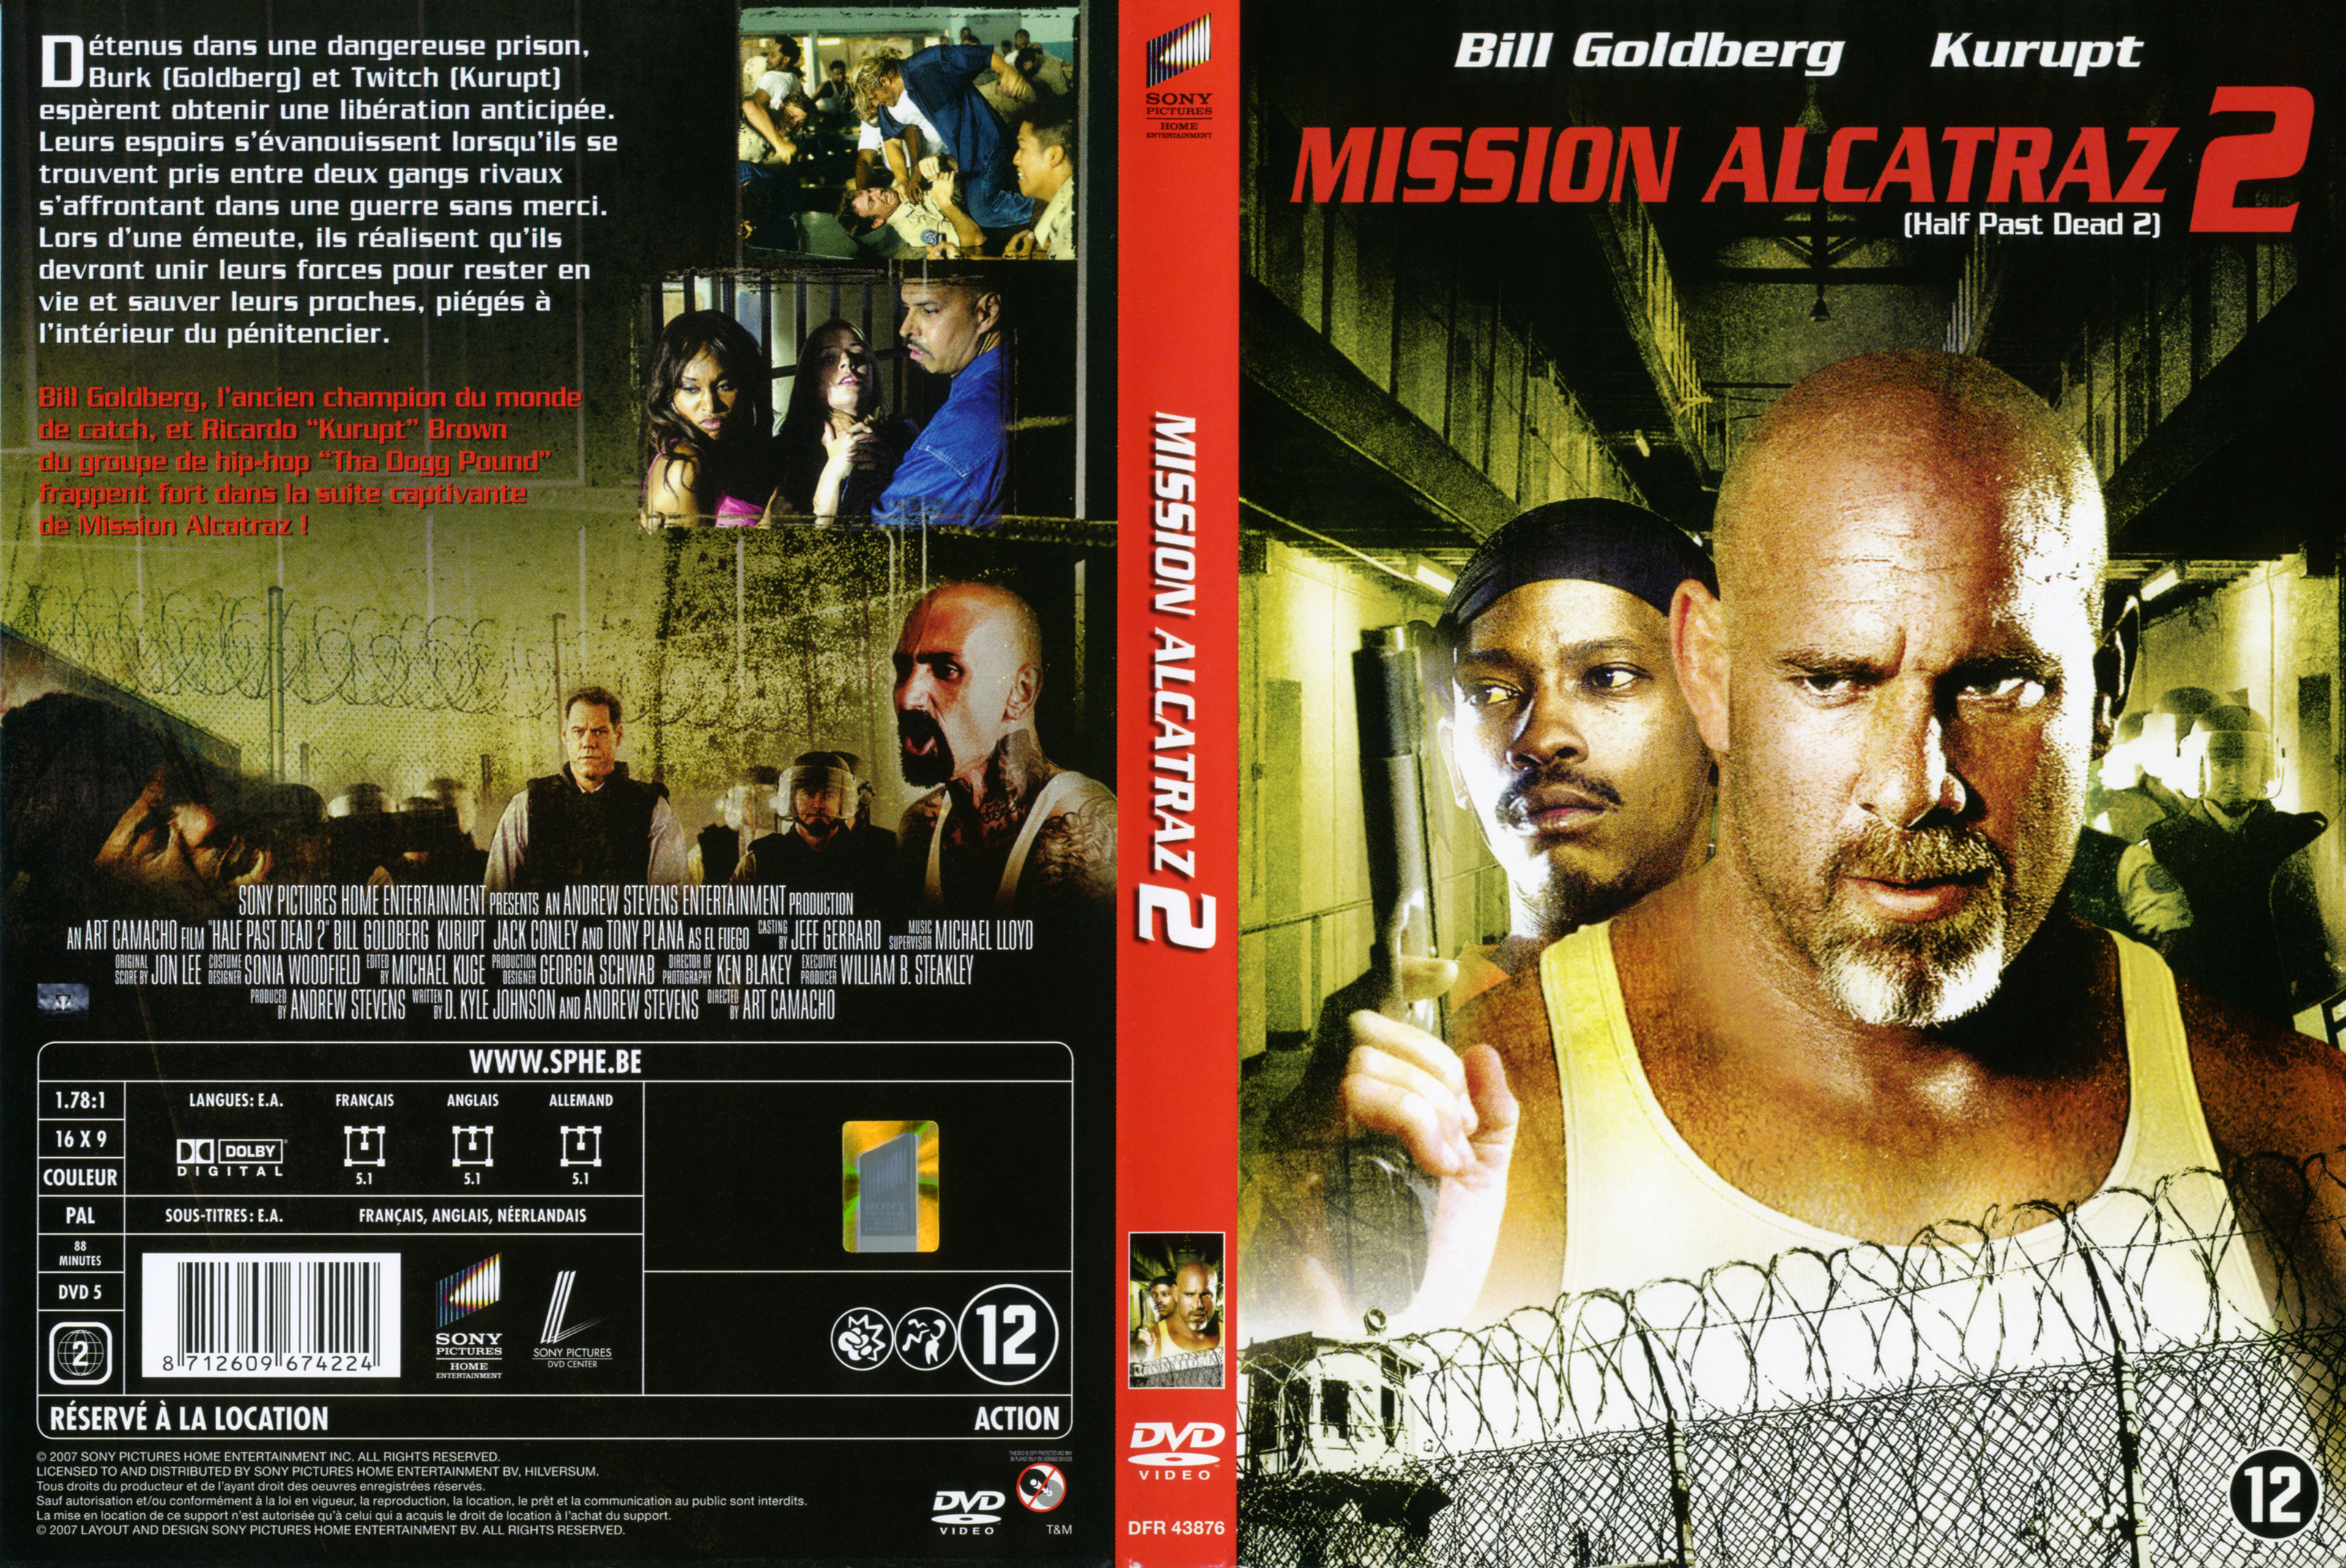 Jaquette DVD Mission alcatraz 2 v2